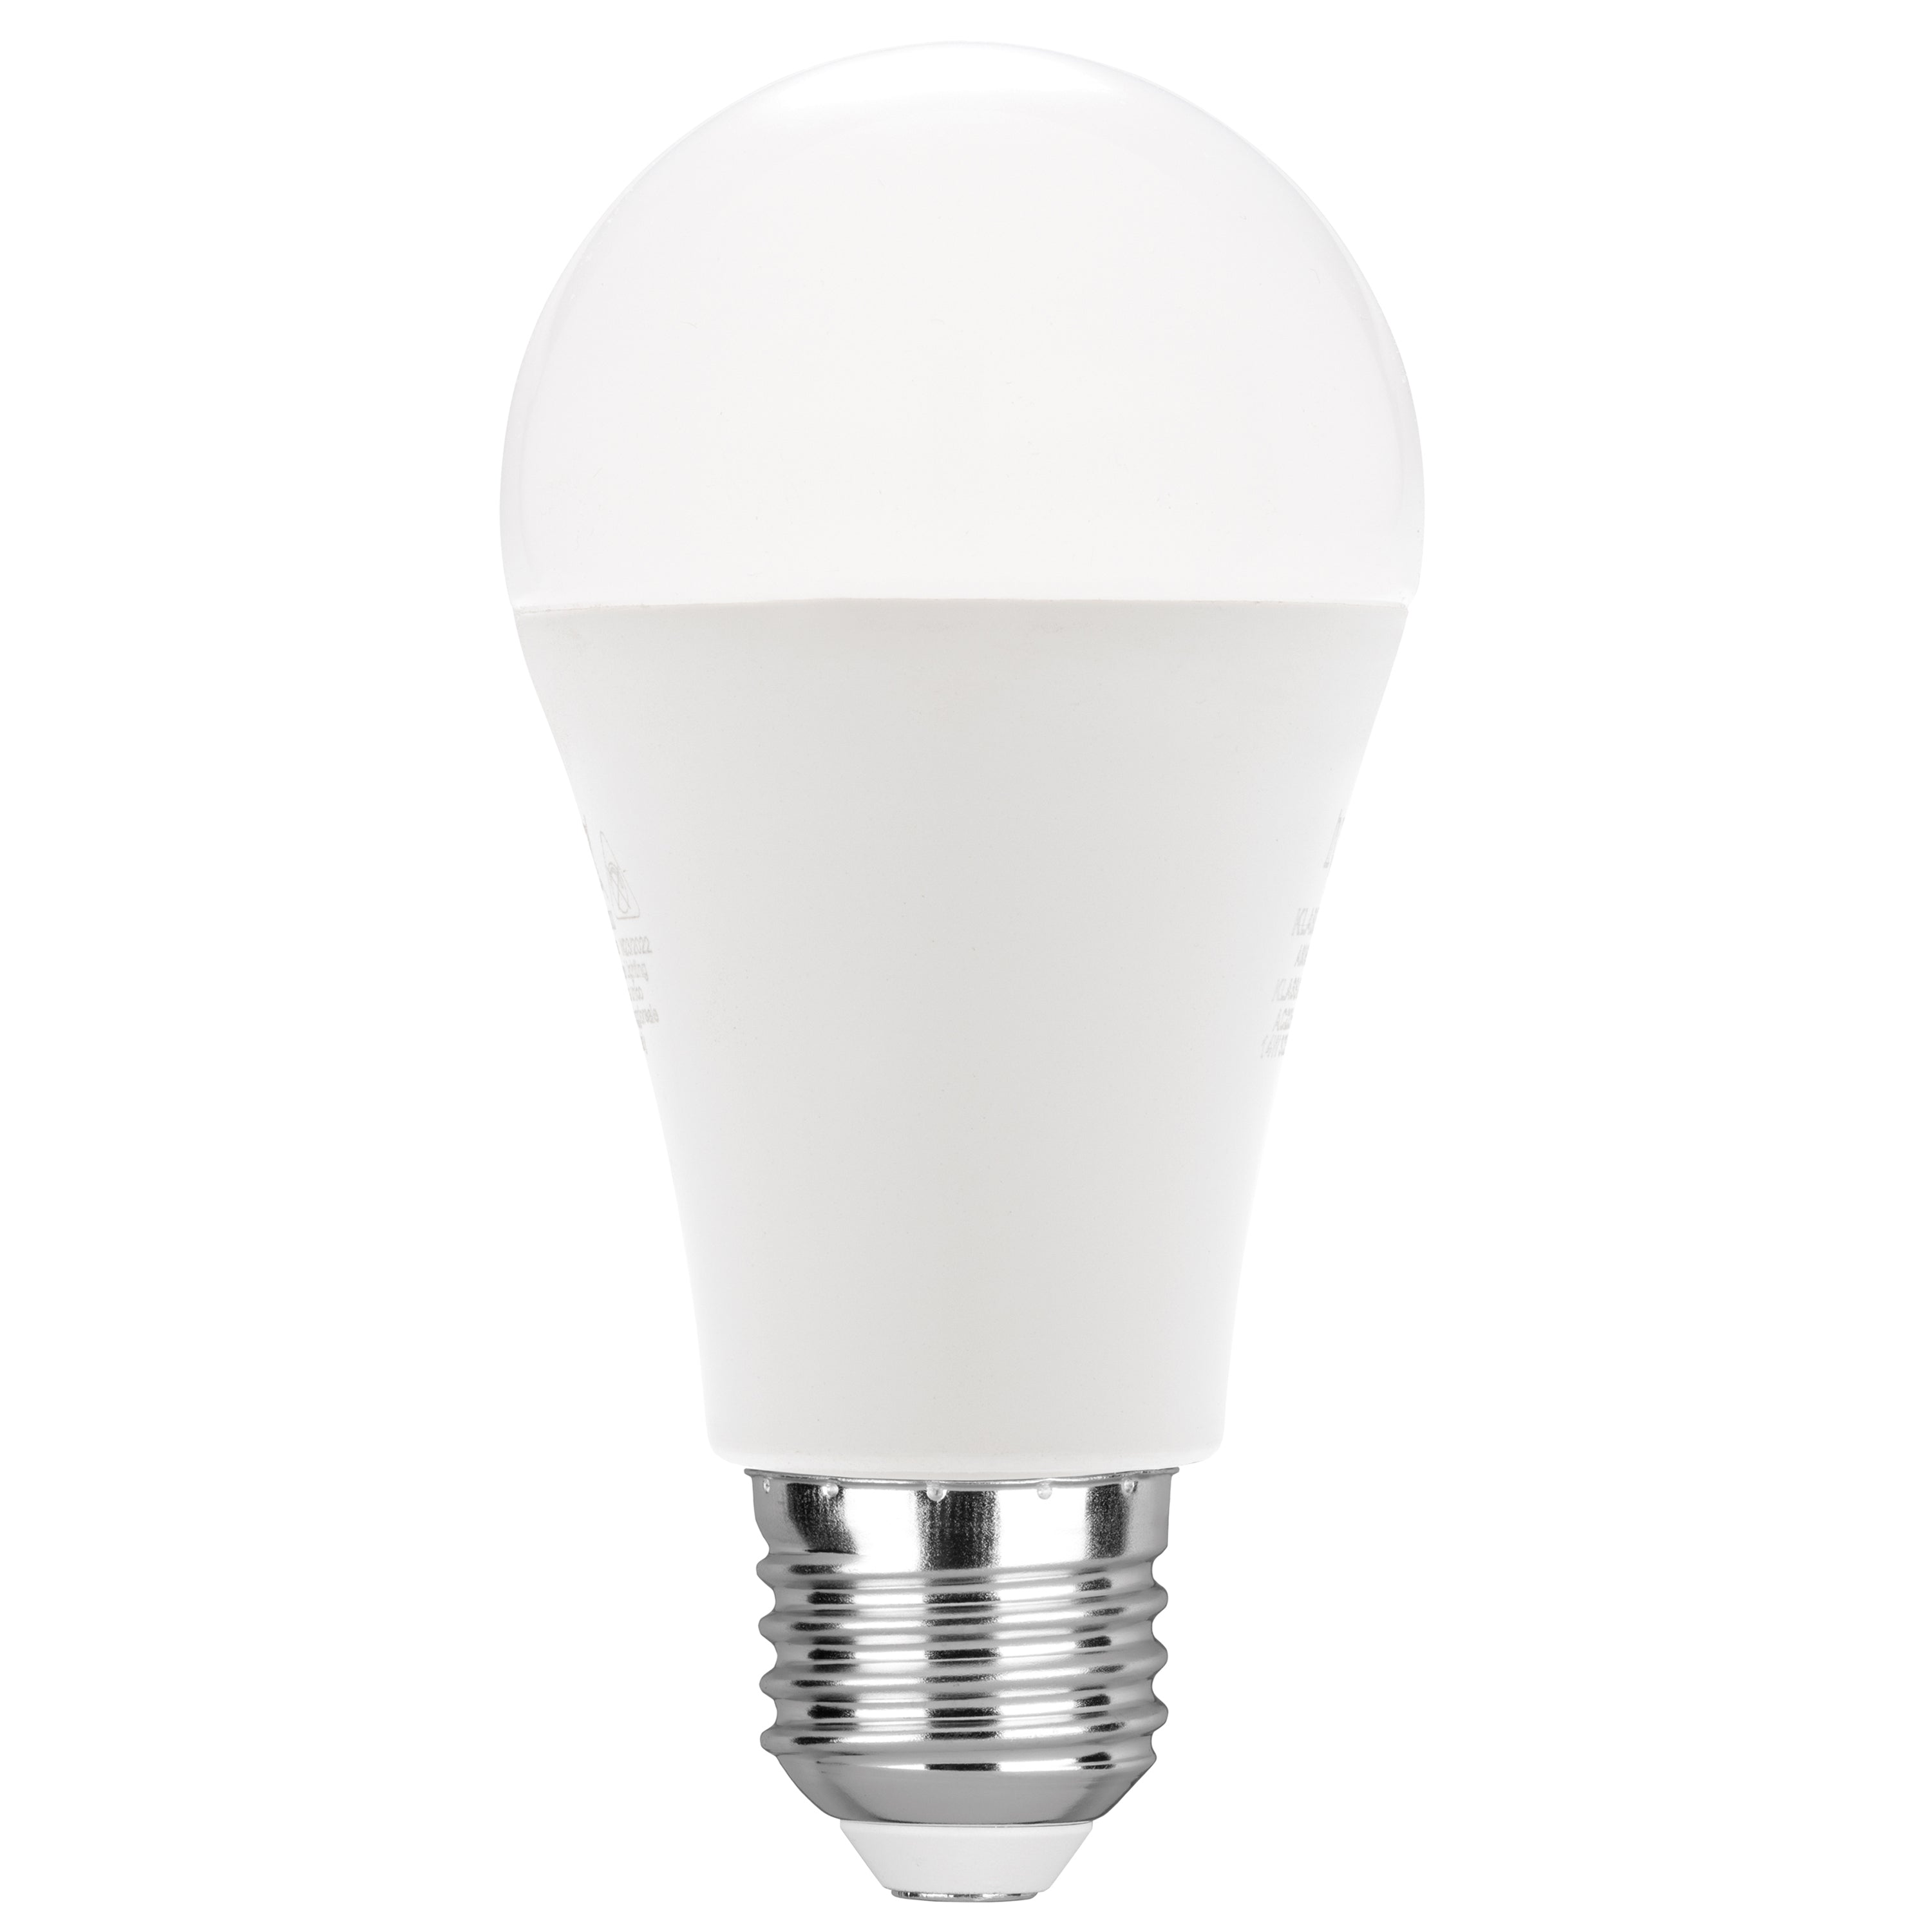 Ampoule LED KLASSIC lumière chaude 14W E27 1416L 120mm